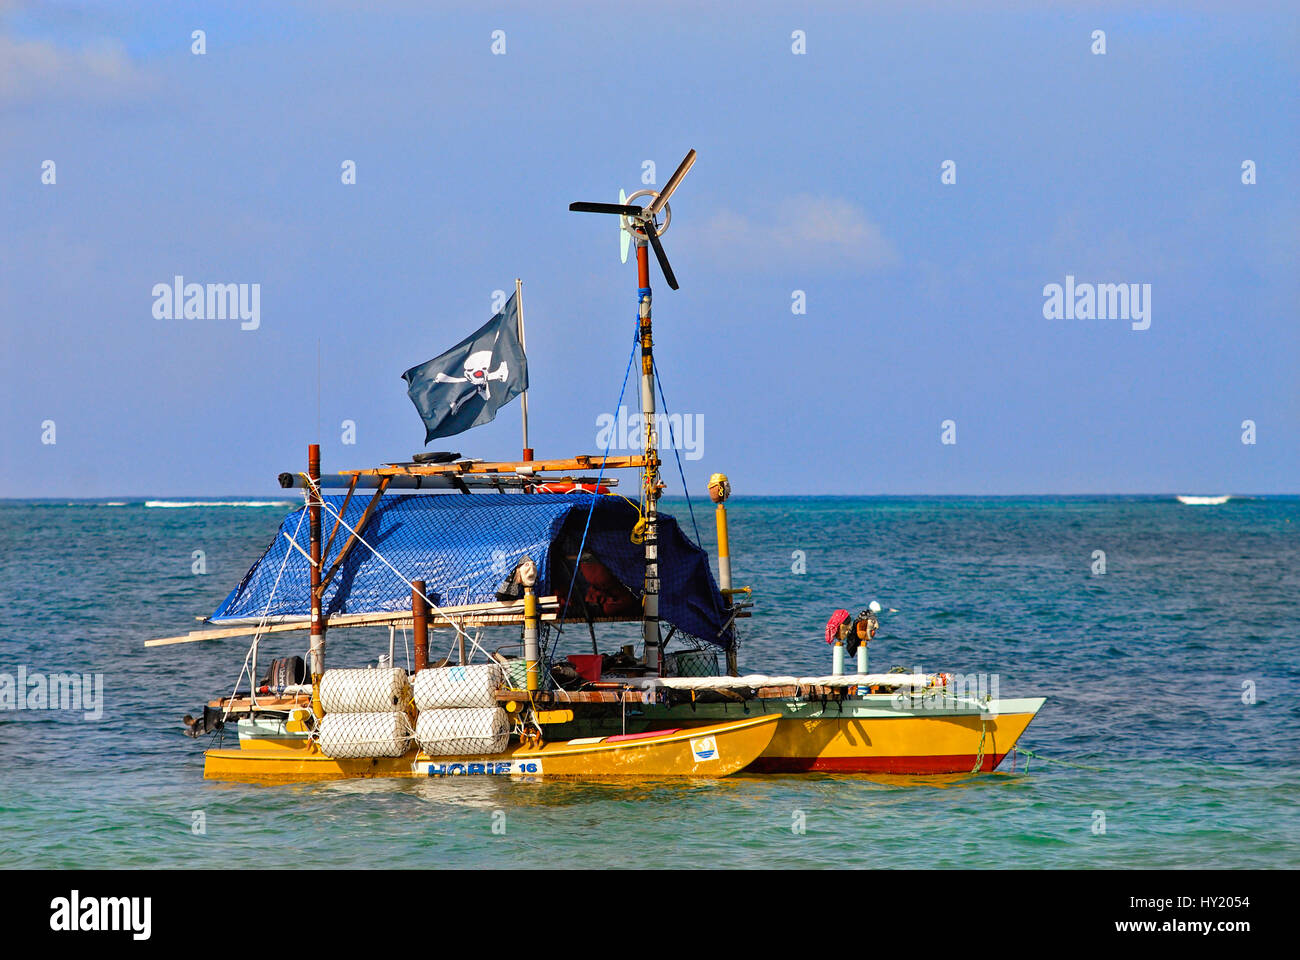 Questo stock mostra fotografica di catamarano di una famiglia hippie davanti ofa spiaggia di Saipan. L'immagine è stata presa su un sunnymorning. Foto Stock